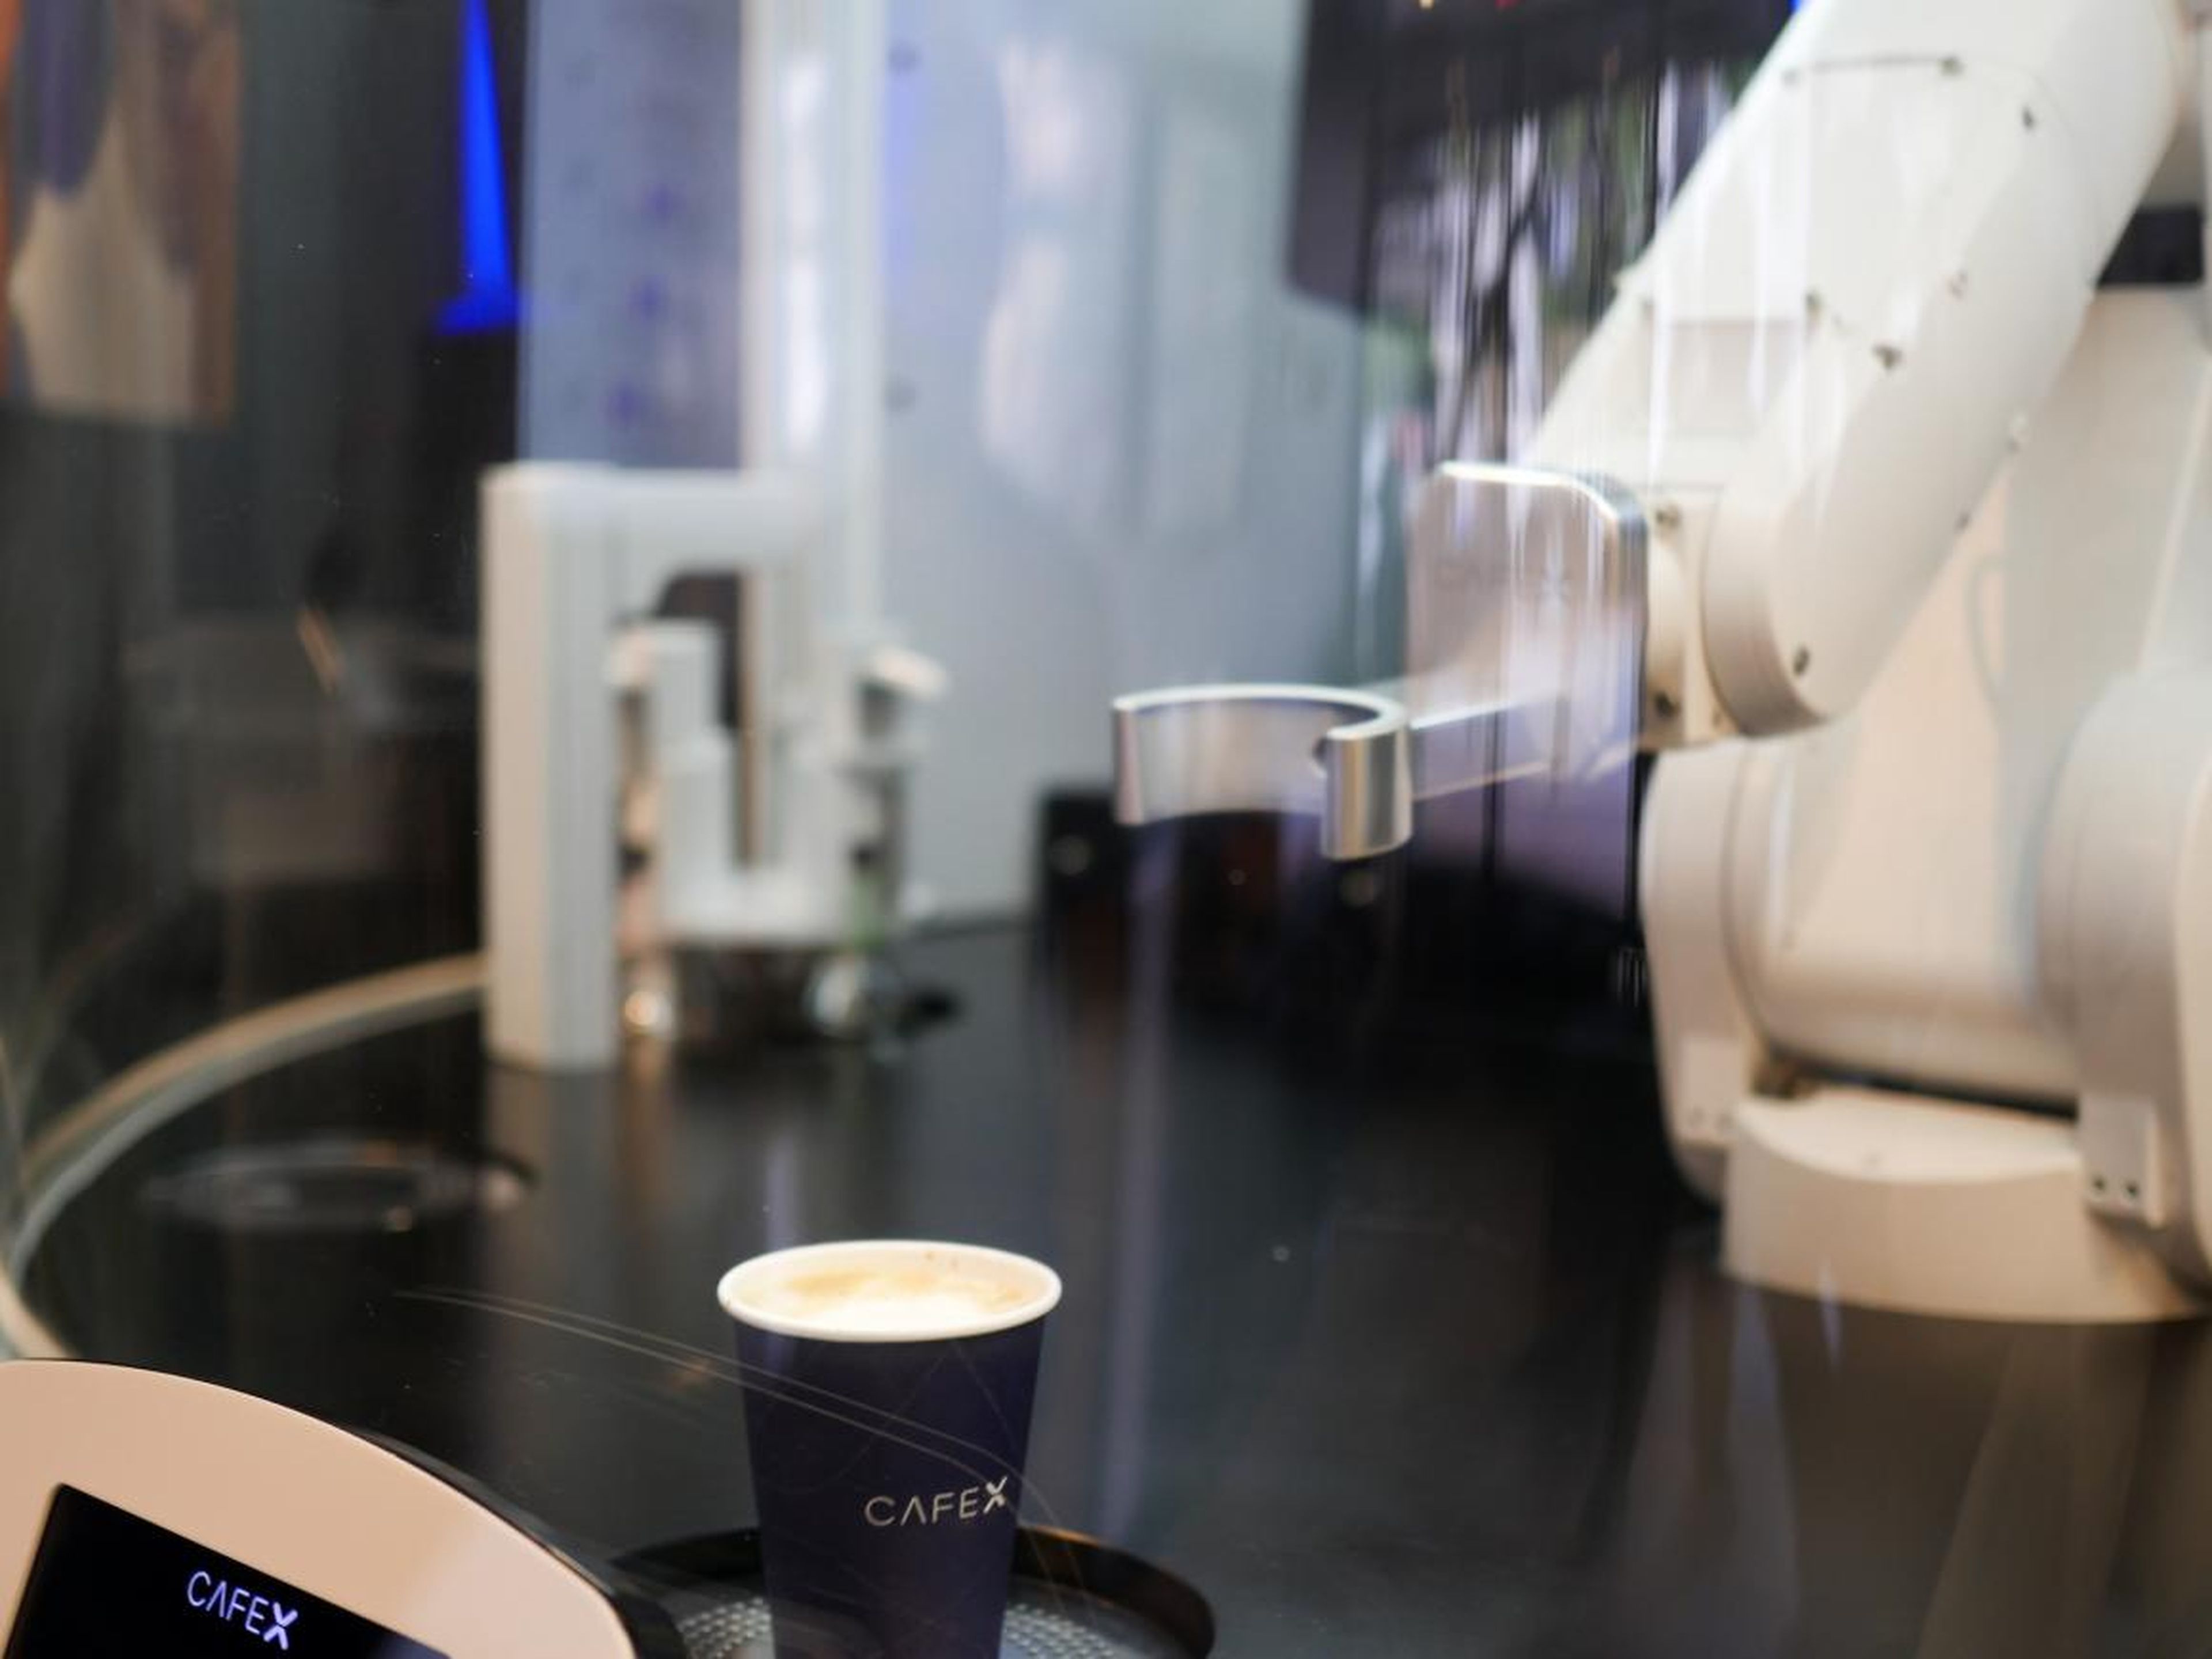 El brazo robot tras la barra de CafeX prepara un pedido de café para un cliente.